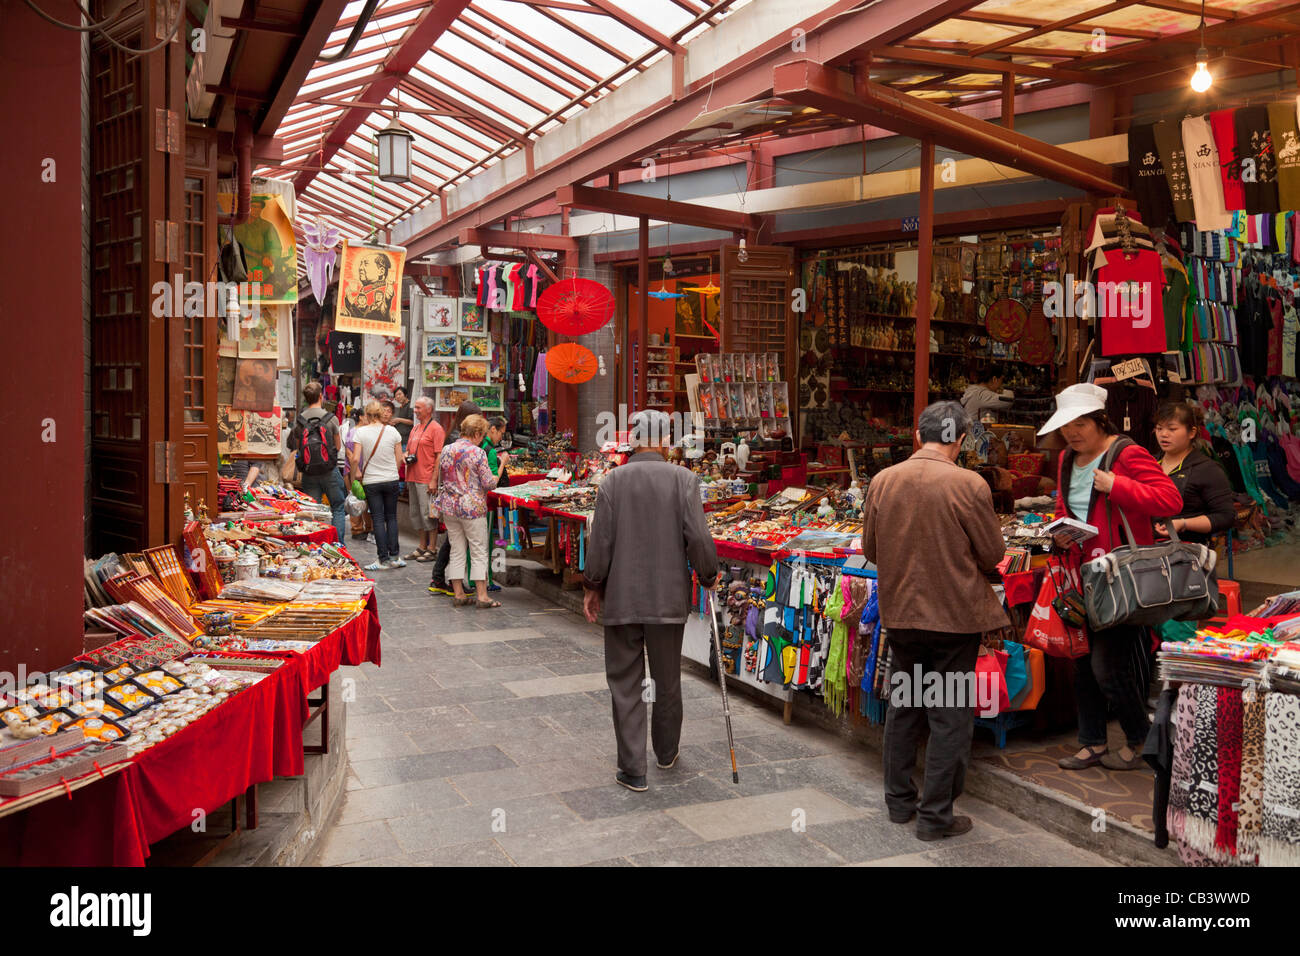 Traditionelle Geschäfte und Marktstände, Markthalle in Xian, Provinz Shaanxi, VR China, Volksrepublik China, Asien Stockfoto